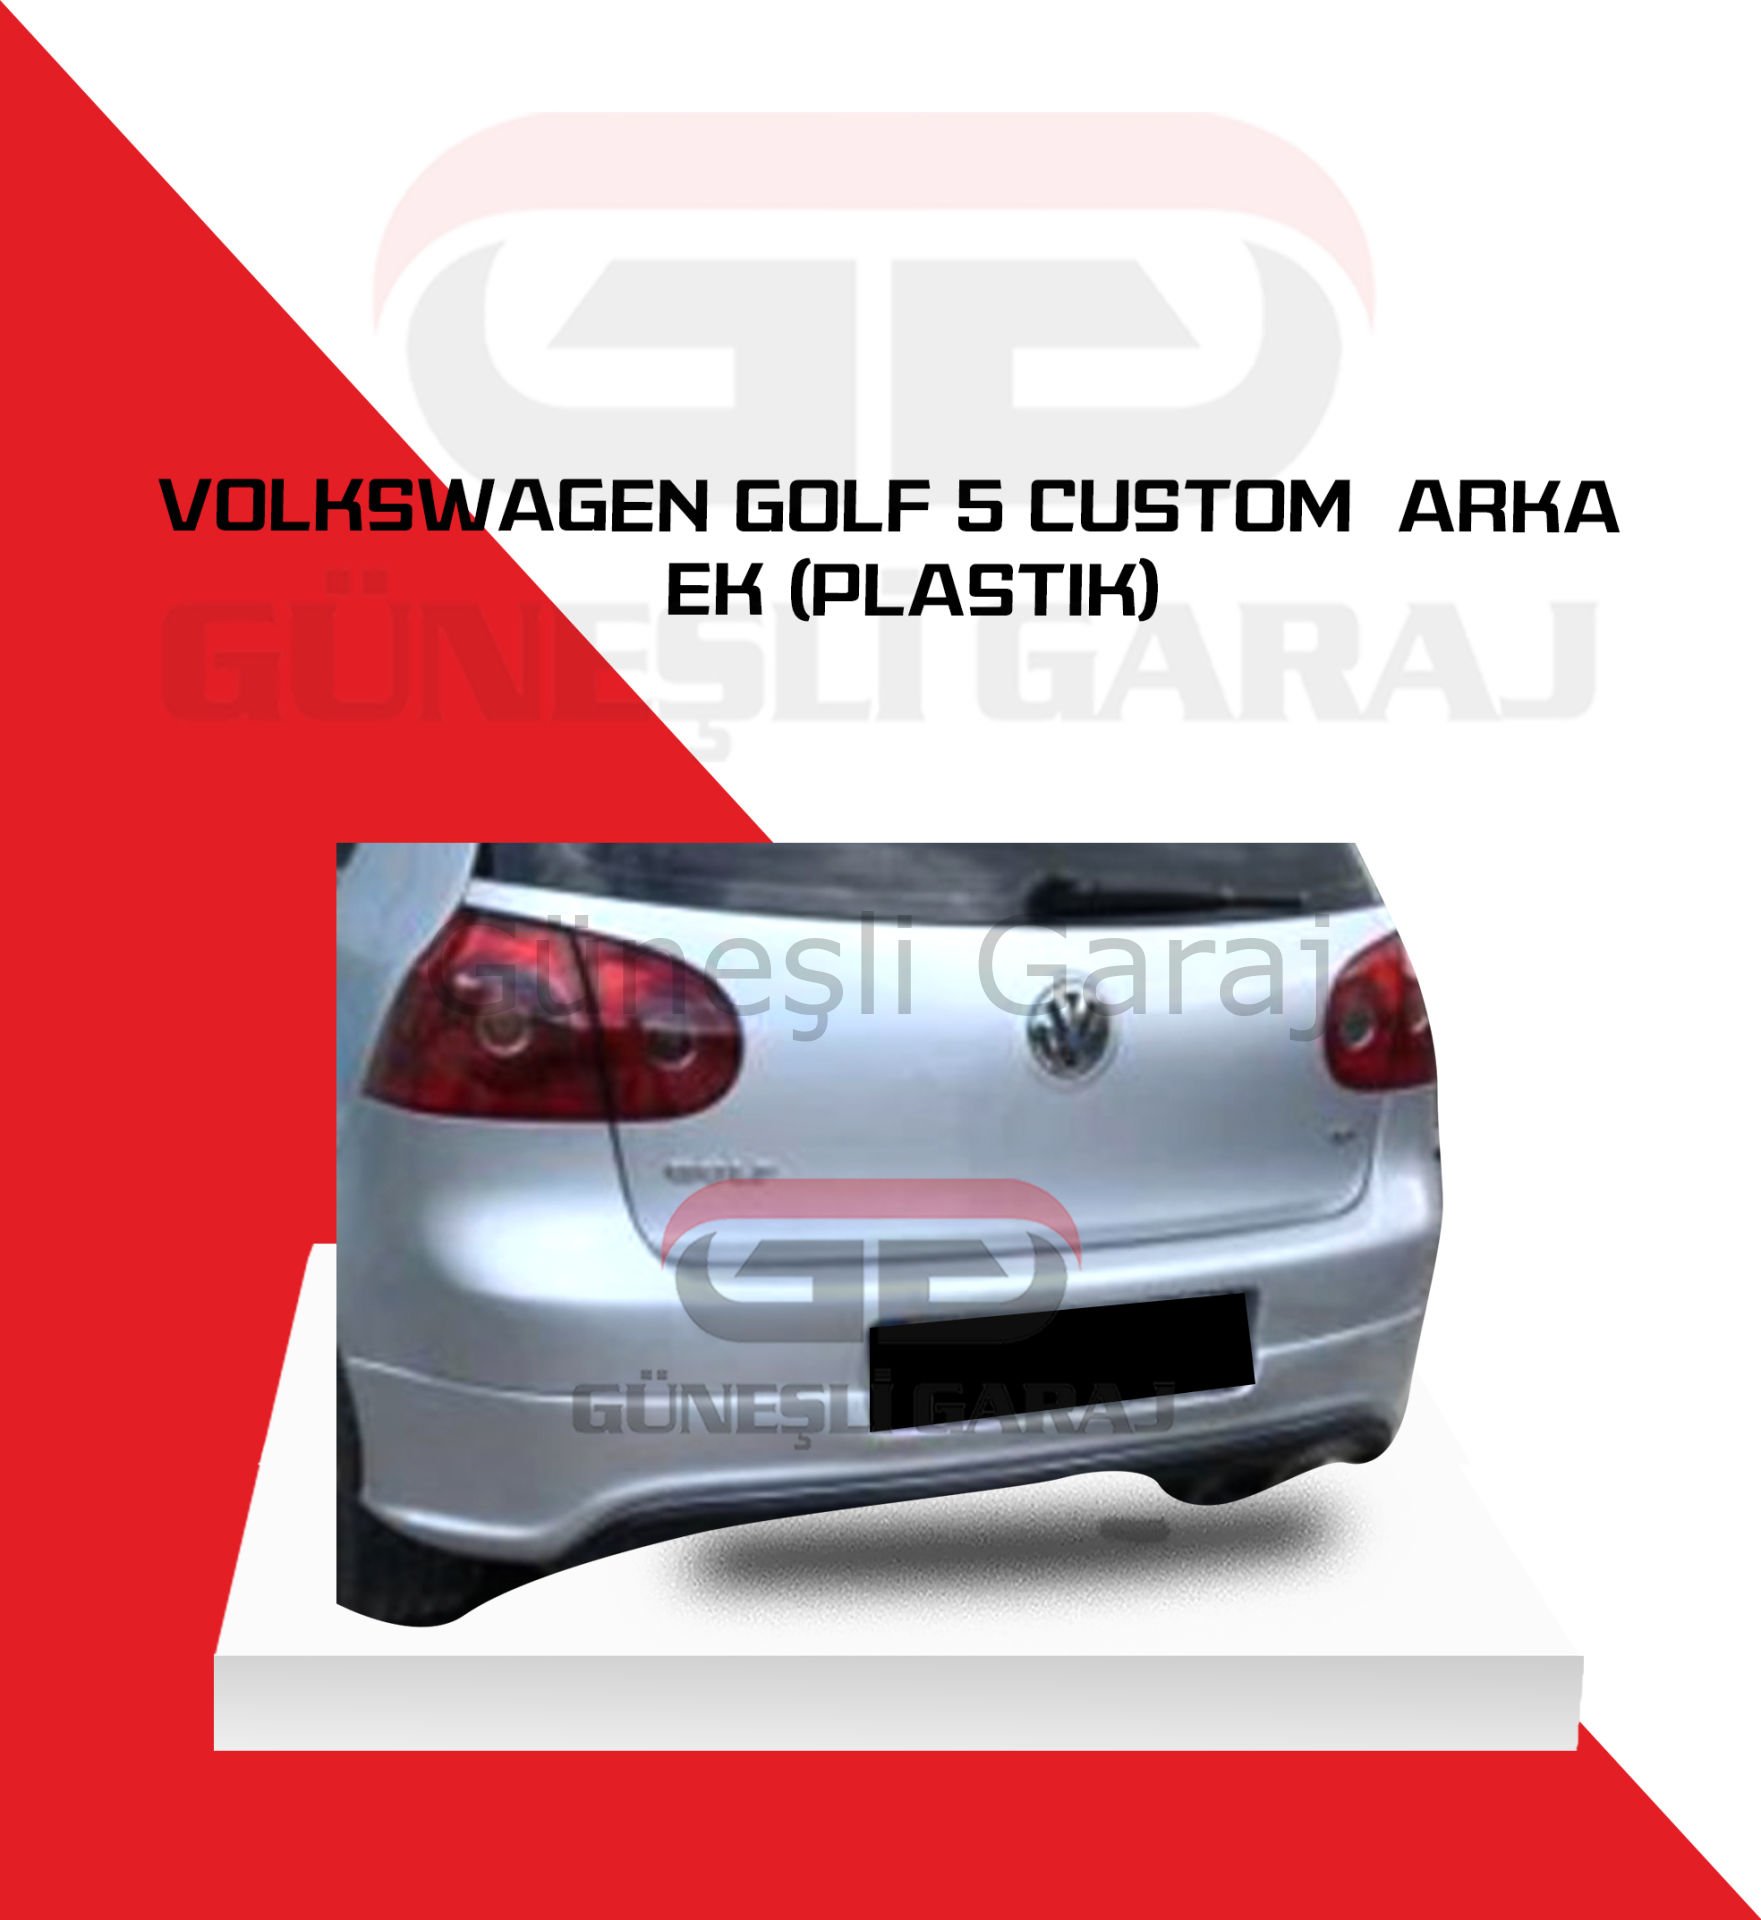 Volkswagen Golf 5 Custom  Arka Ek (Plastik)